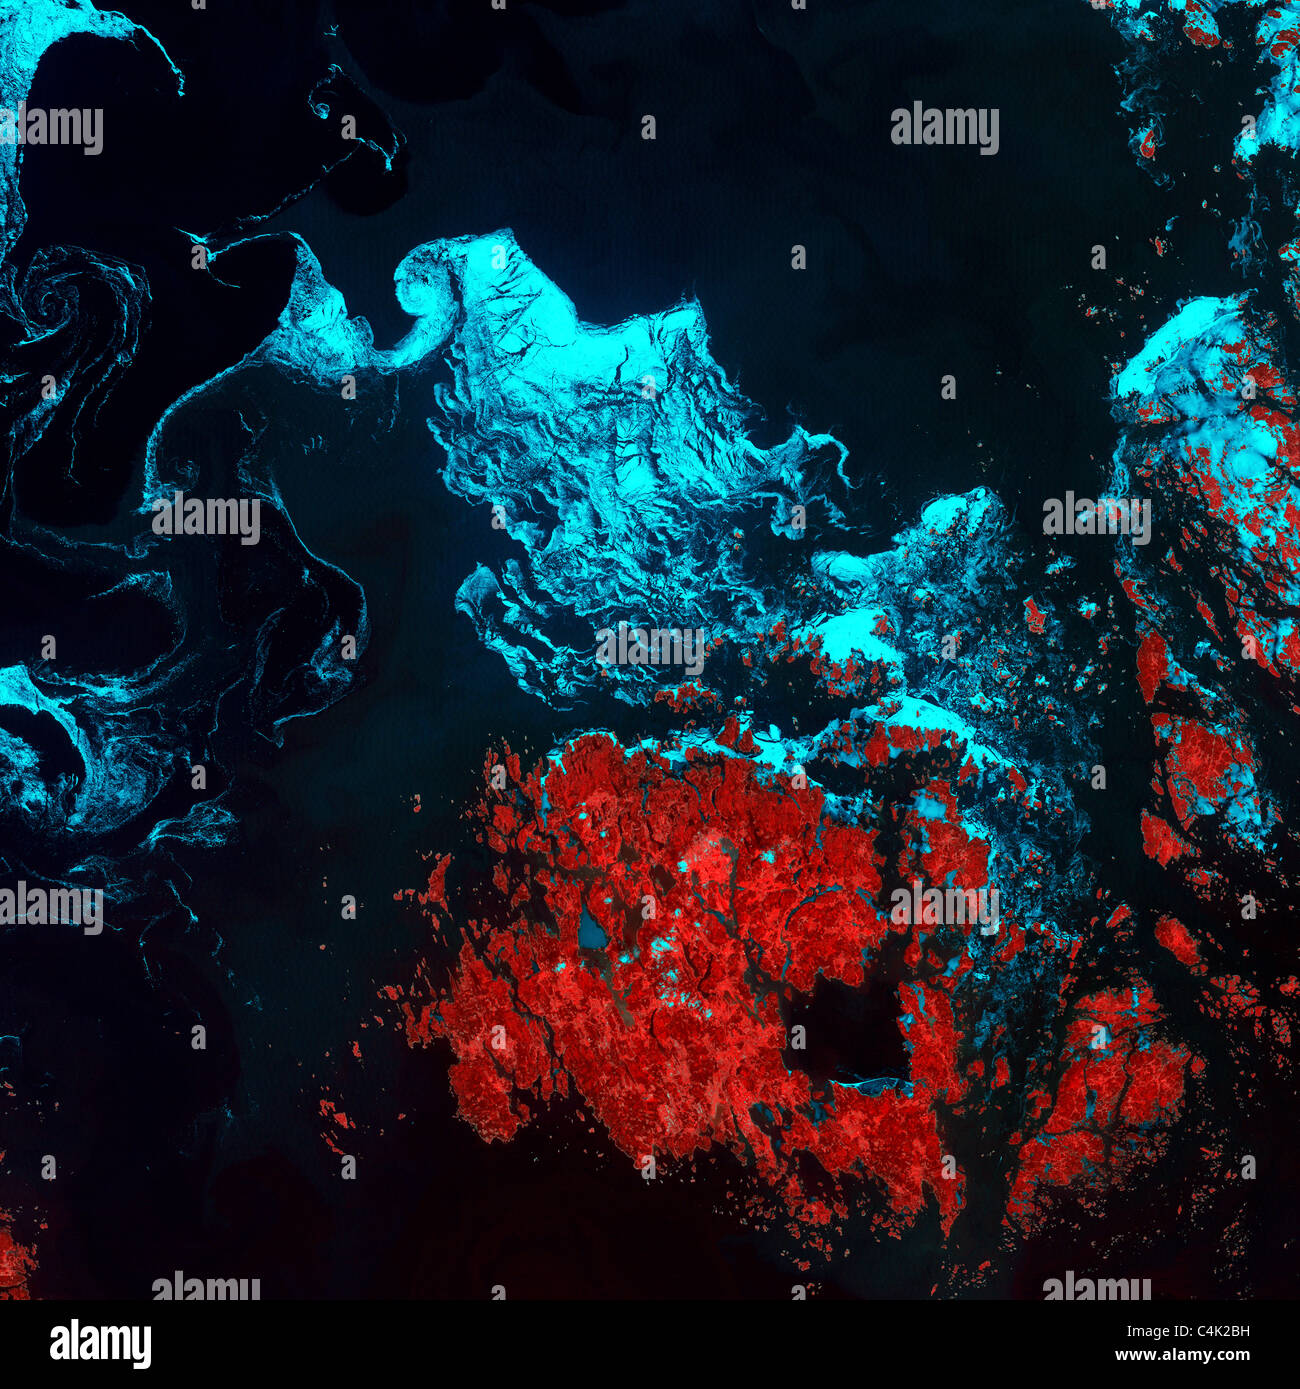 Photo satellite de sorbet (turquoise) dans les eaux froides de la Mer baltique à proximité les îles Aland entre la Suède et la Finlande. Banque D'Images